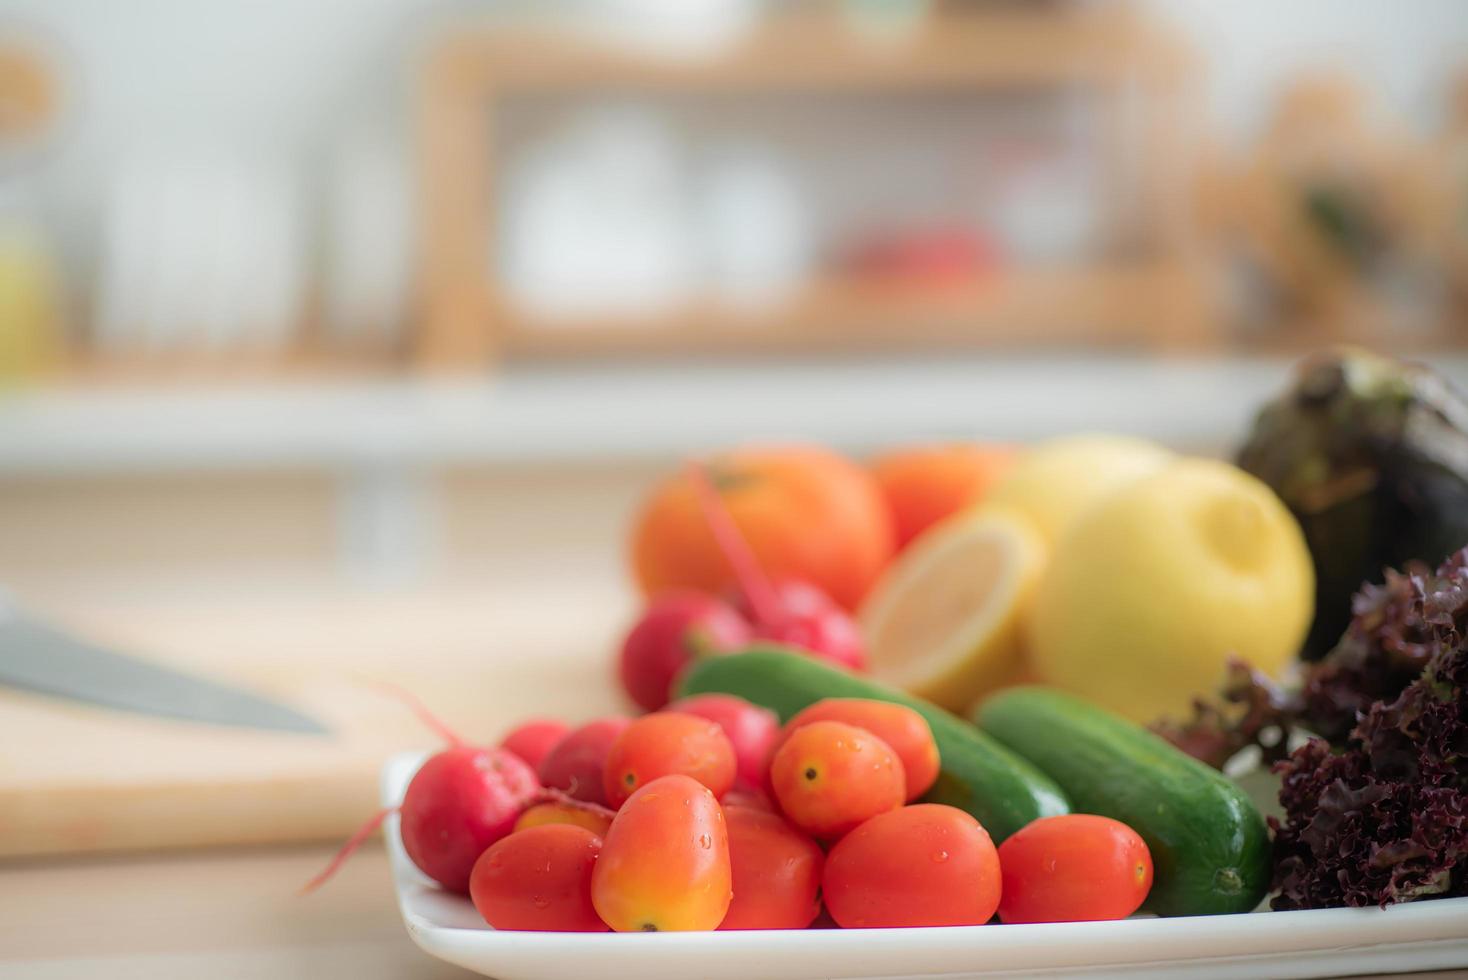 tomates cerises ils sont placés dans un plateau avec des radis, des concombres, de la laitue de chêne rouge et d'autres fruits et légumes. comme matière première pour faire des salades sur la table de la cuisine. photo